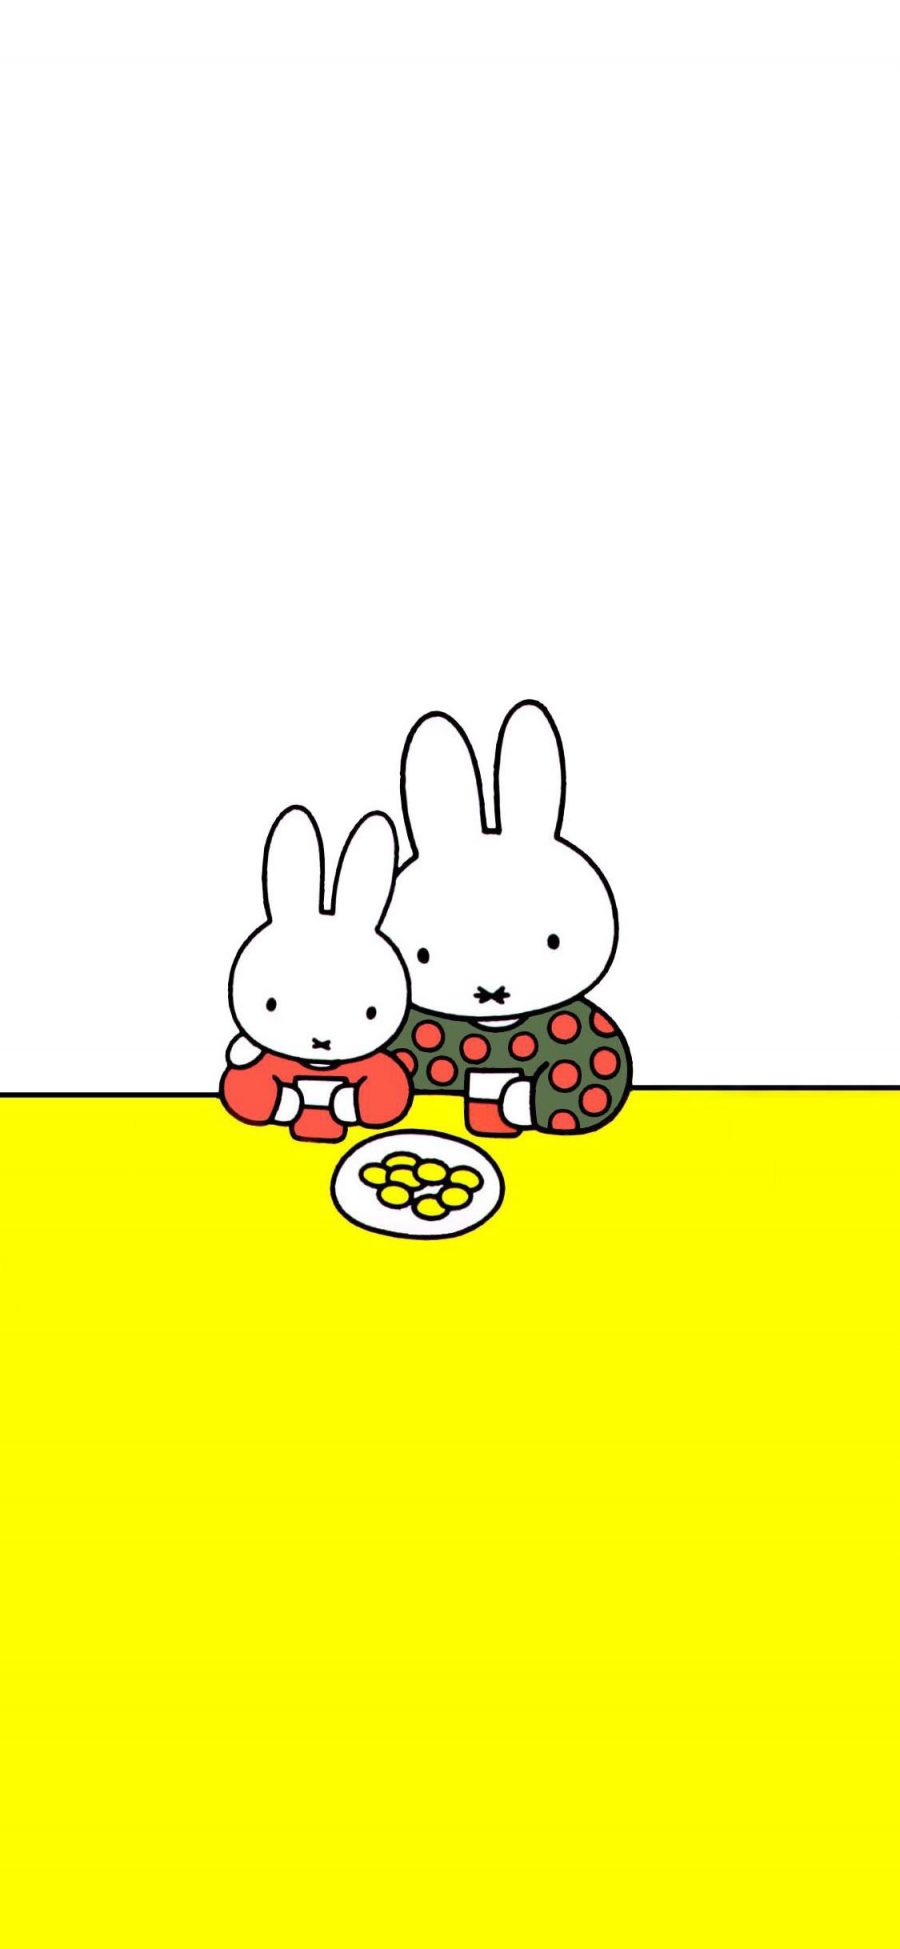 [2436×1125]米菲兔 可爱 动画 兔子 下午茶 苹果手机动漫壁纸图片